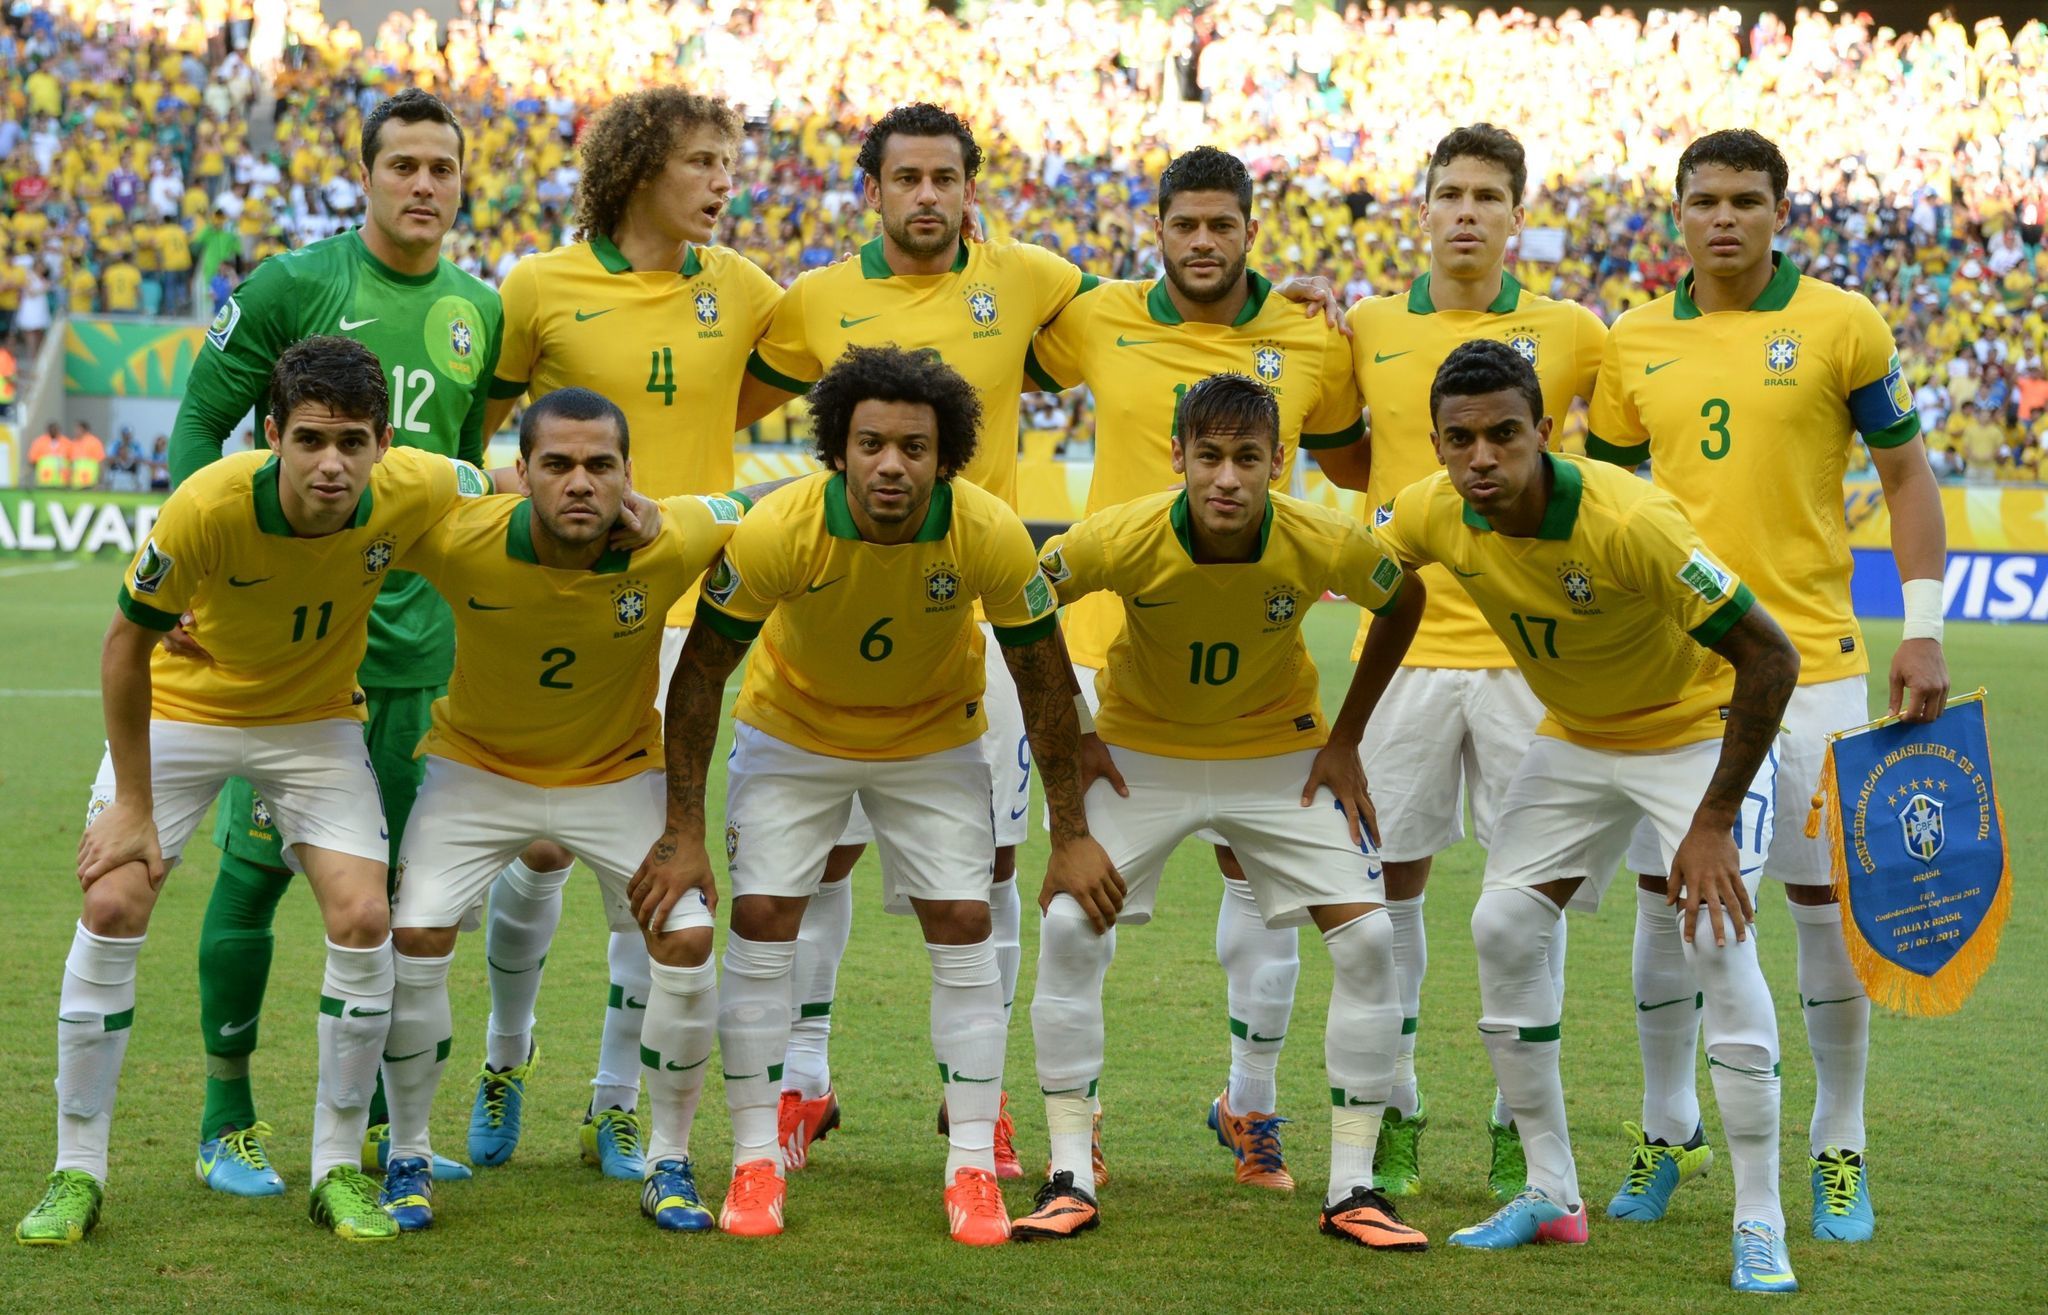 Fútbol, el encantador "jogo bonito" de Brasil El Sentinel